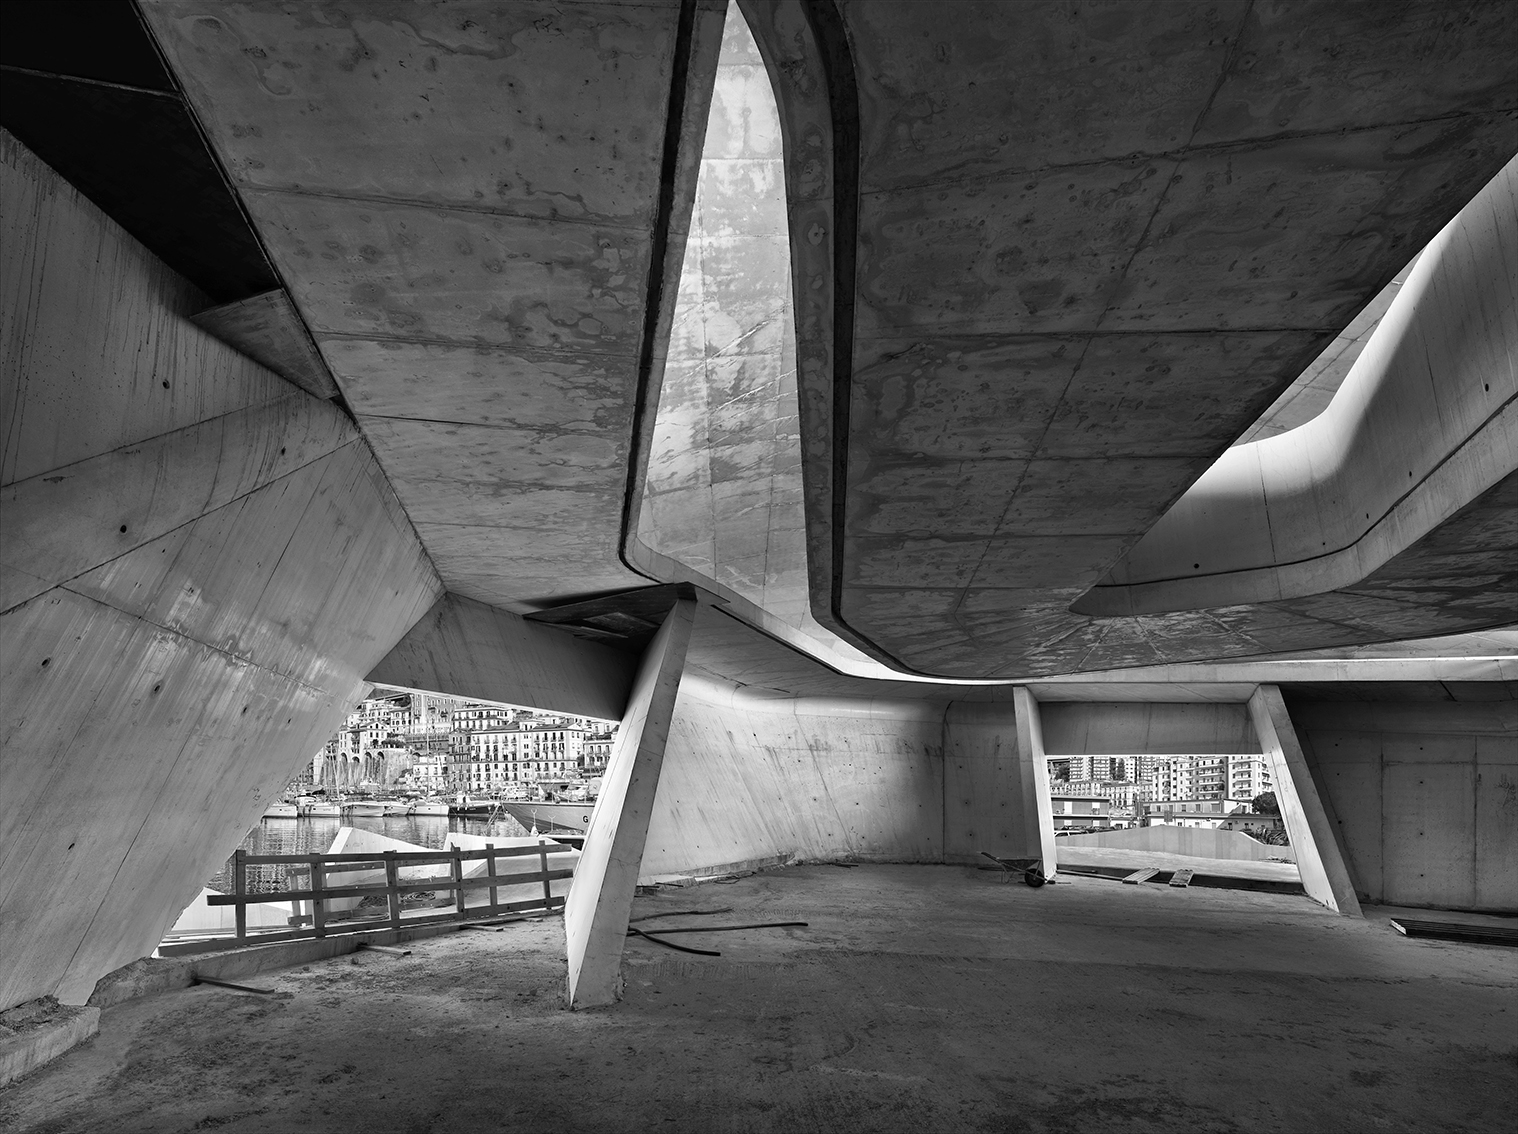 Stazione  Marittima, cantiere di Salerno, 16 marzo 2012 ore 15:48. Architetto Zaha Hadid